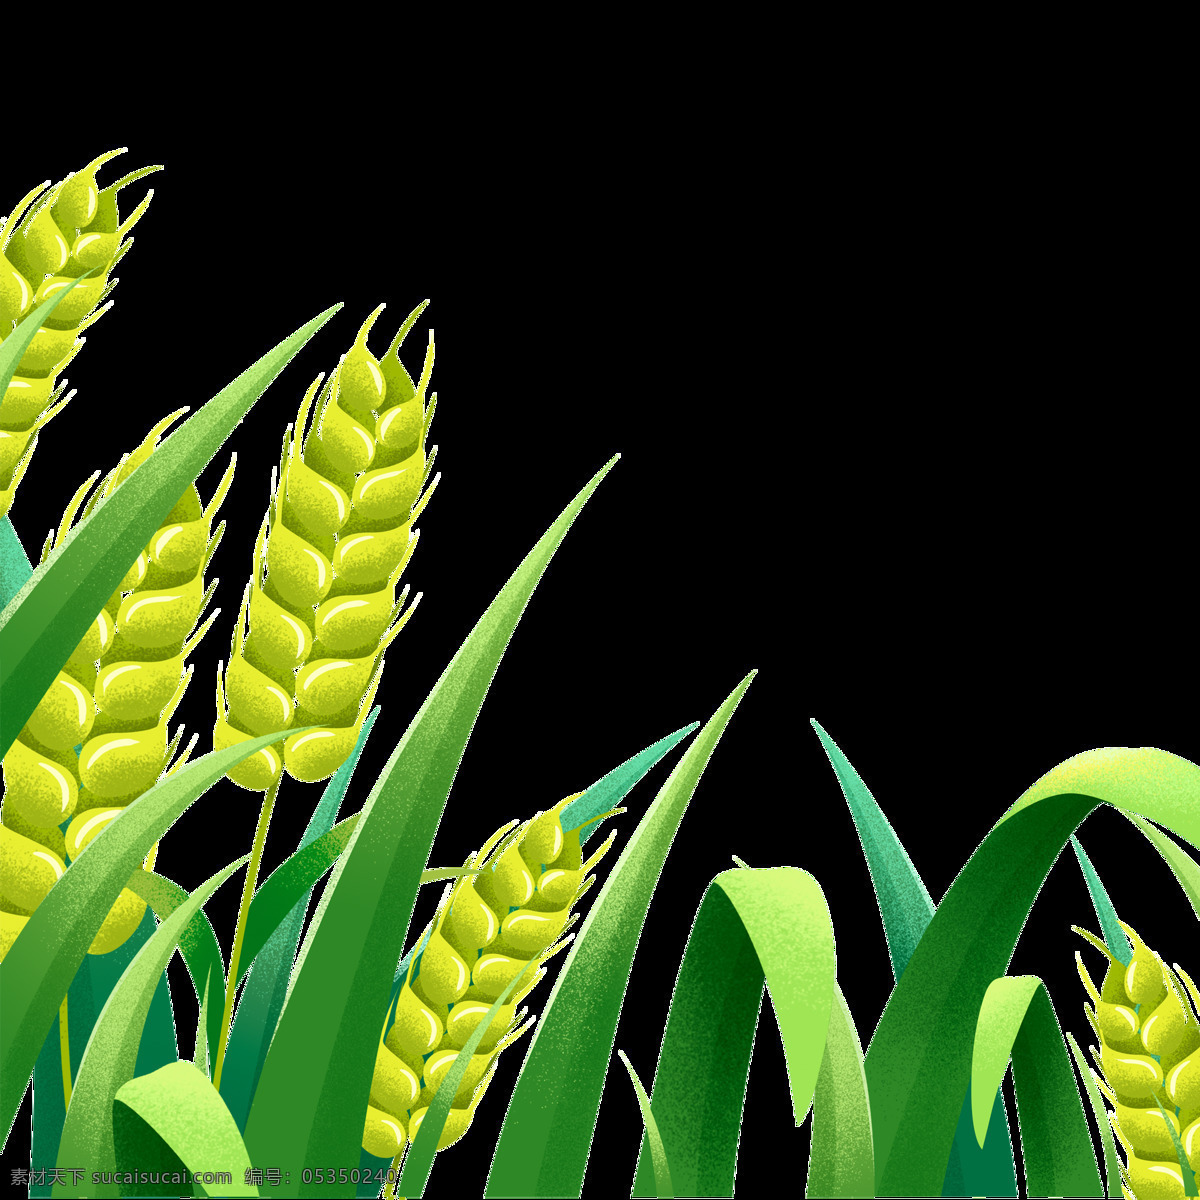 小麦图片 小麦 麦穗 麦子 麦田 收获 丰收 麦地 金色麦田 麦收时节 成熟麦子 乡村 粮食 照片